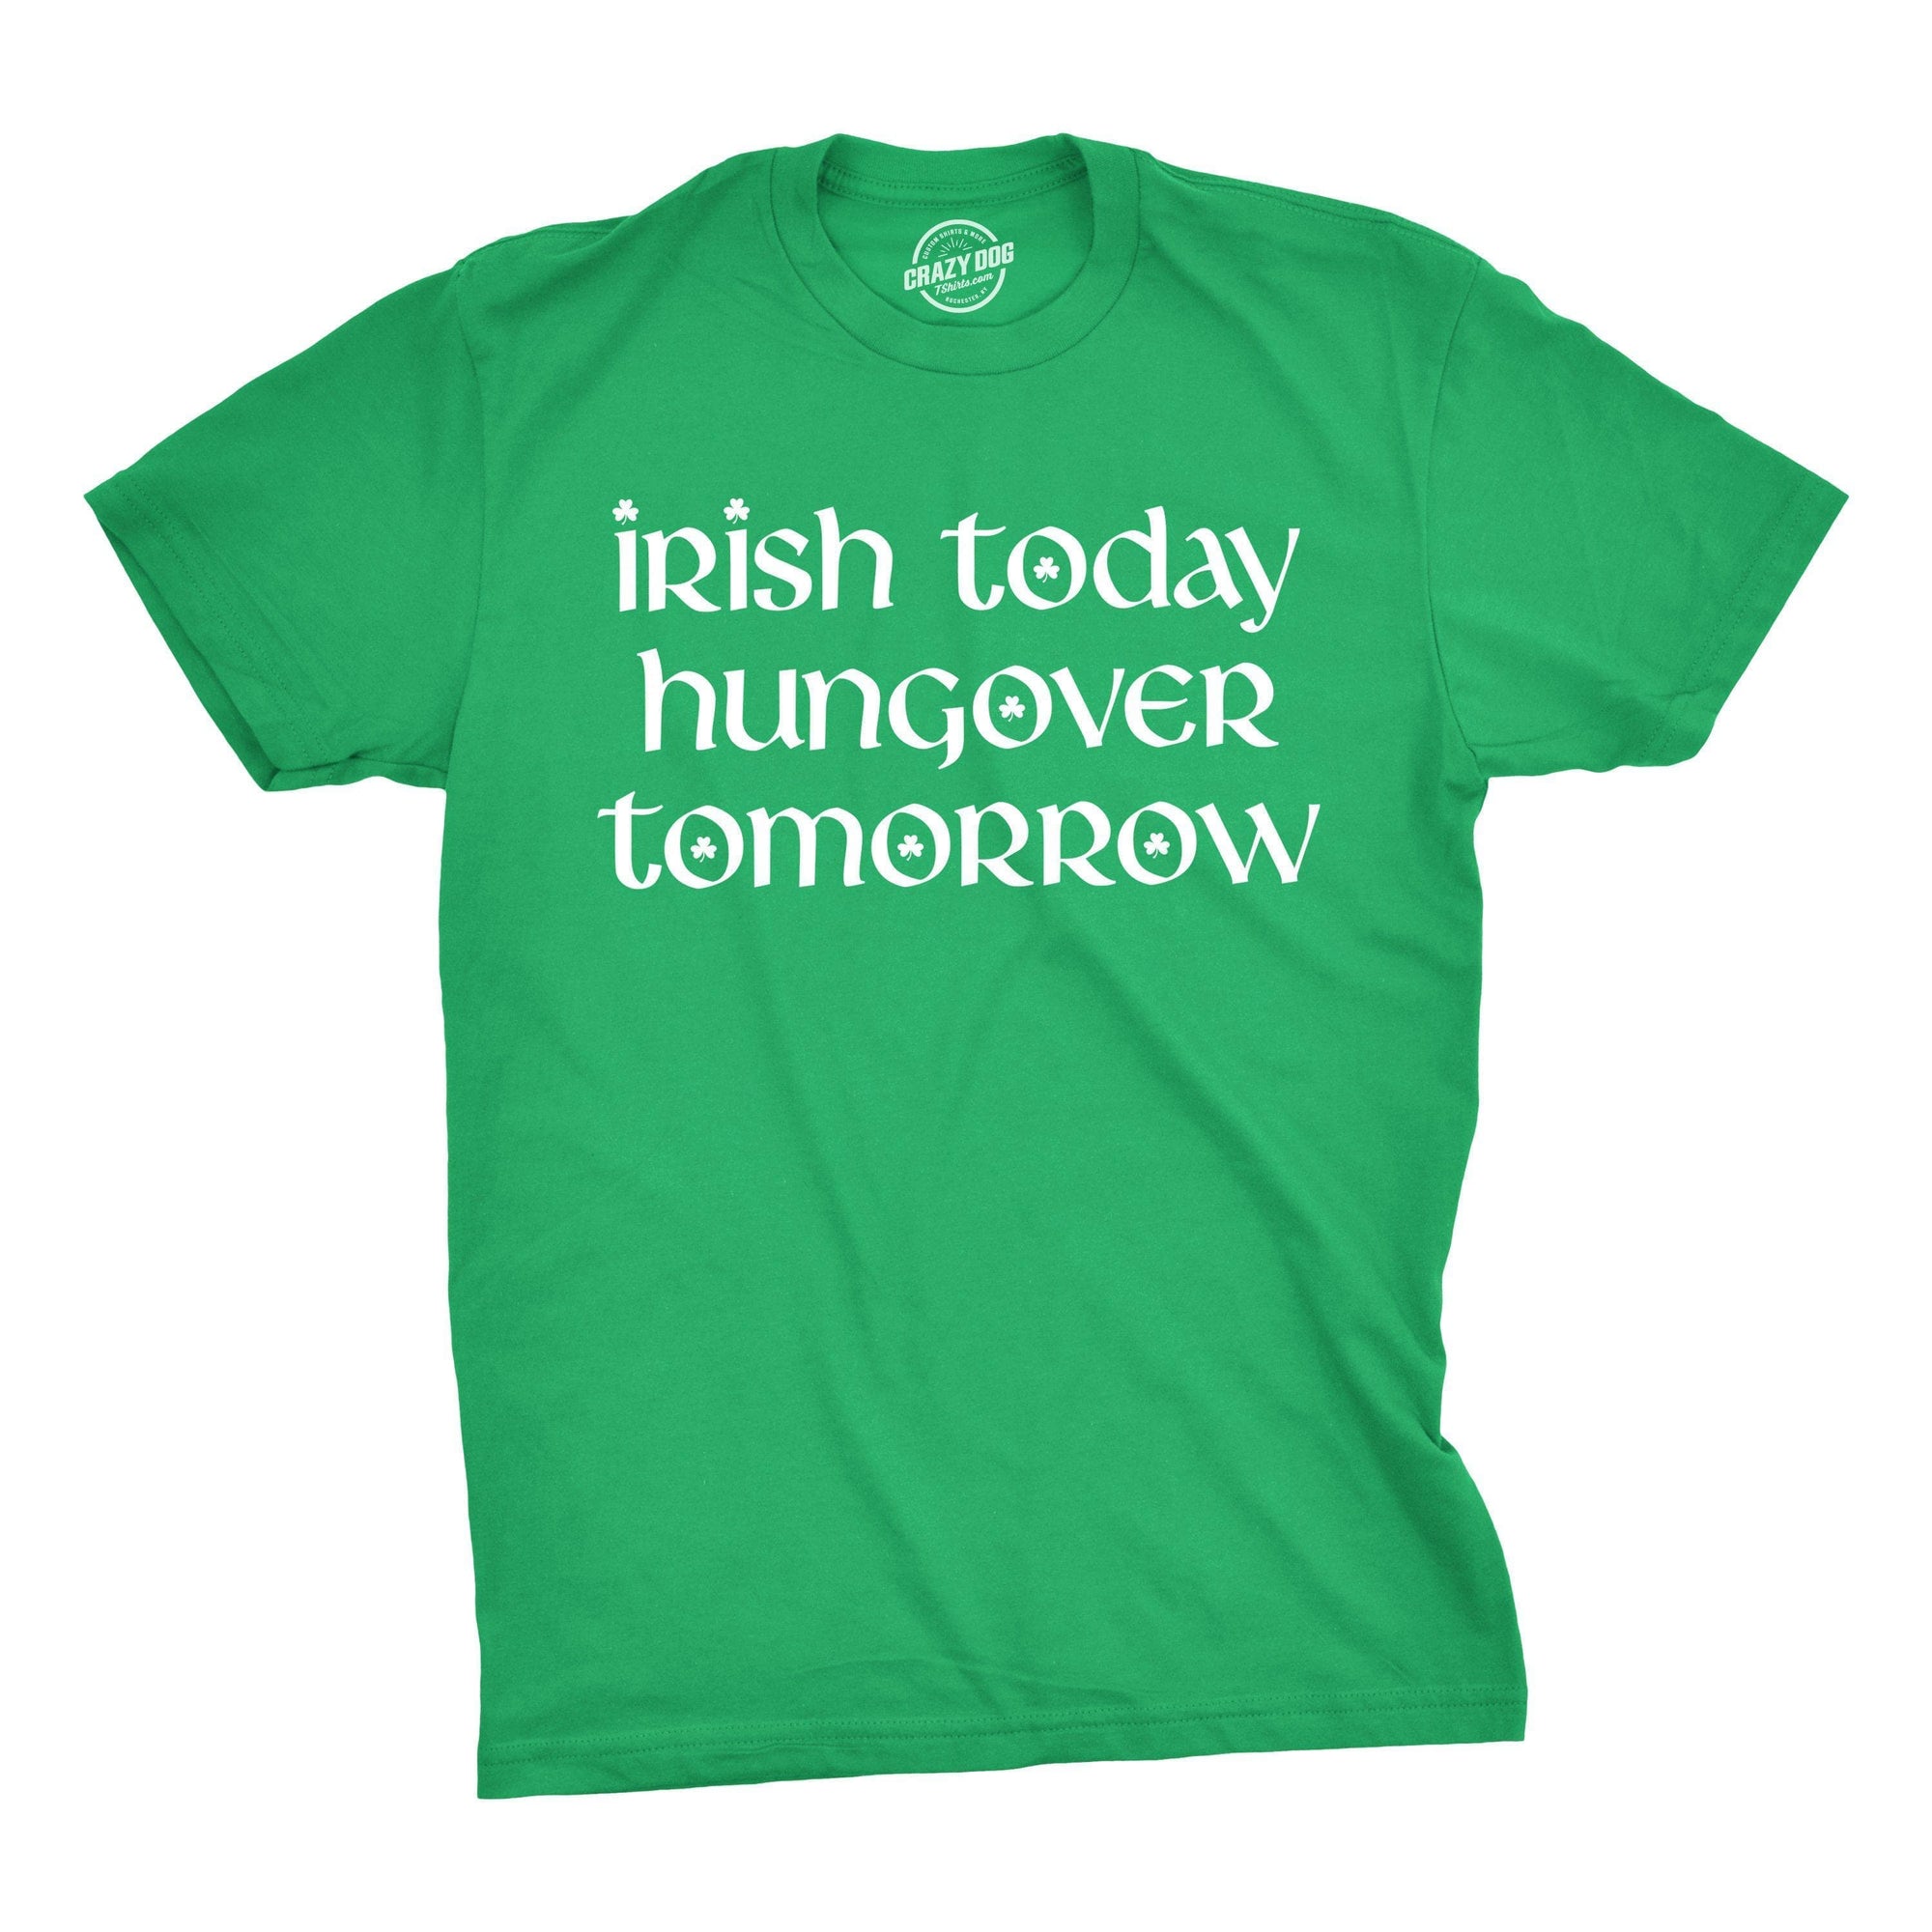 Irish Yoga Stickmen Funny Fitness Drinking Women's T-shirt Humor